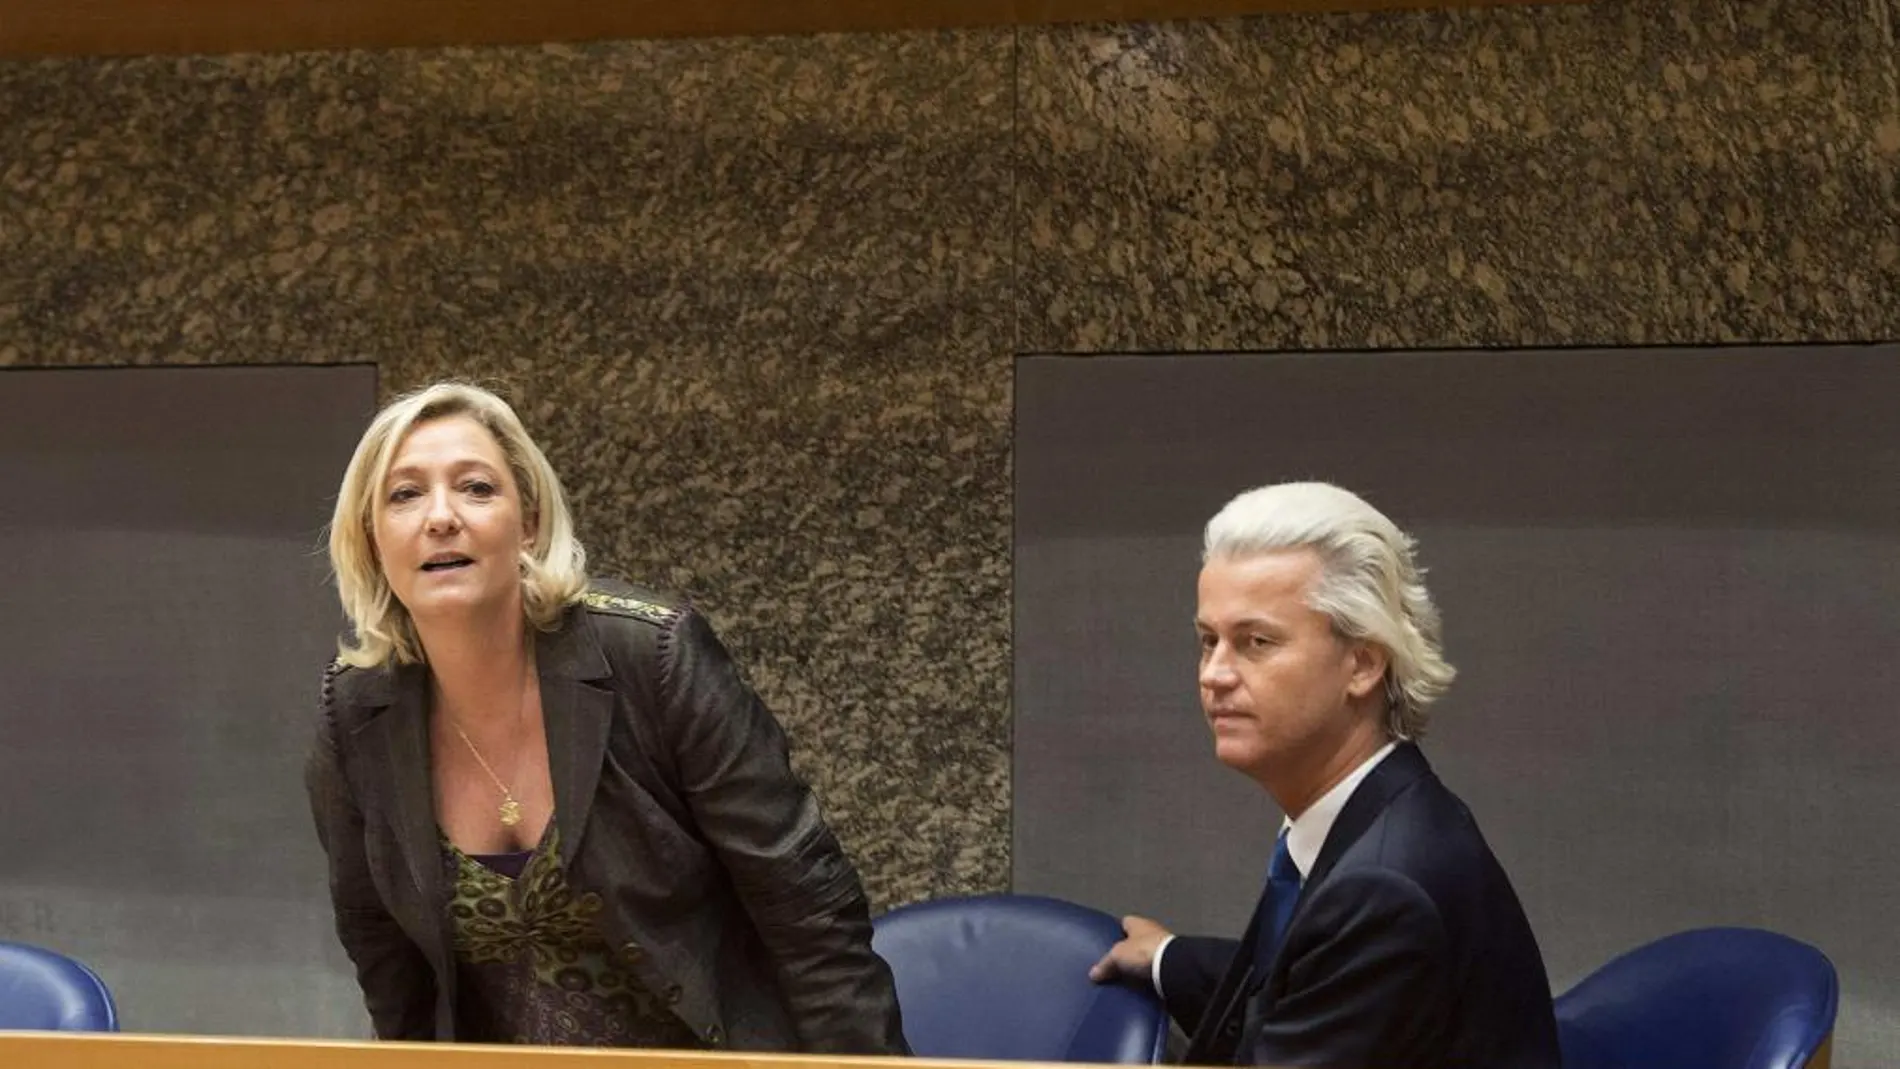 La líder del Frente Nacional, Marine Le Pen, y el xenófobo holandés Geert Wilders